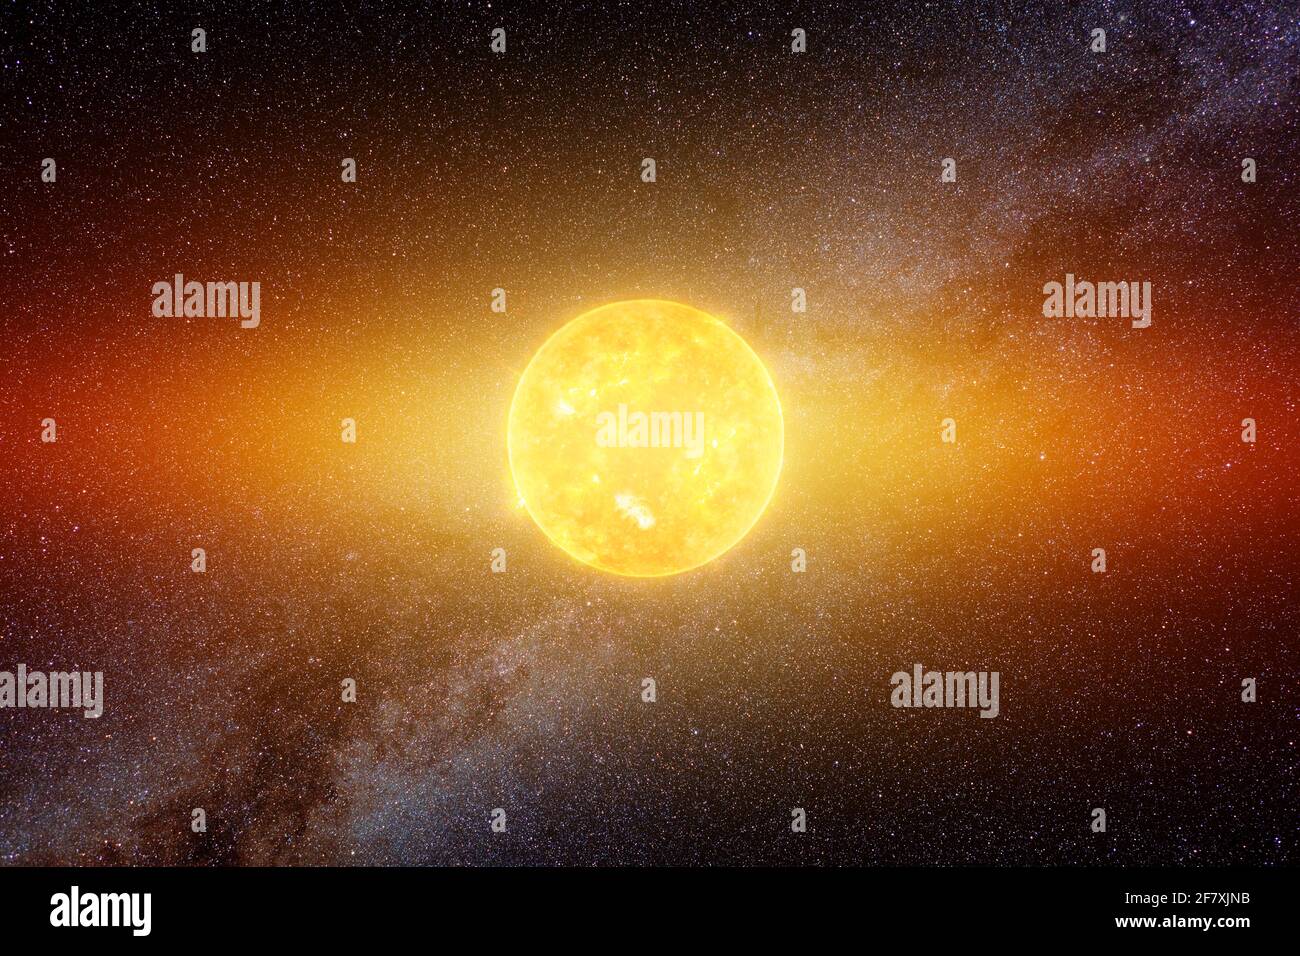 Helle Sonne gegen dunklen Sternenhimmel und Milchstraße im Sonnensystem, Elemente dieses Bildes, die von der NASA eingerichtet wurden Stockfoto